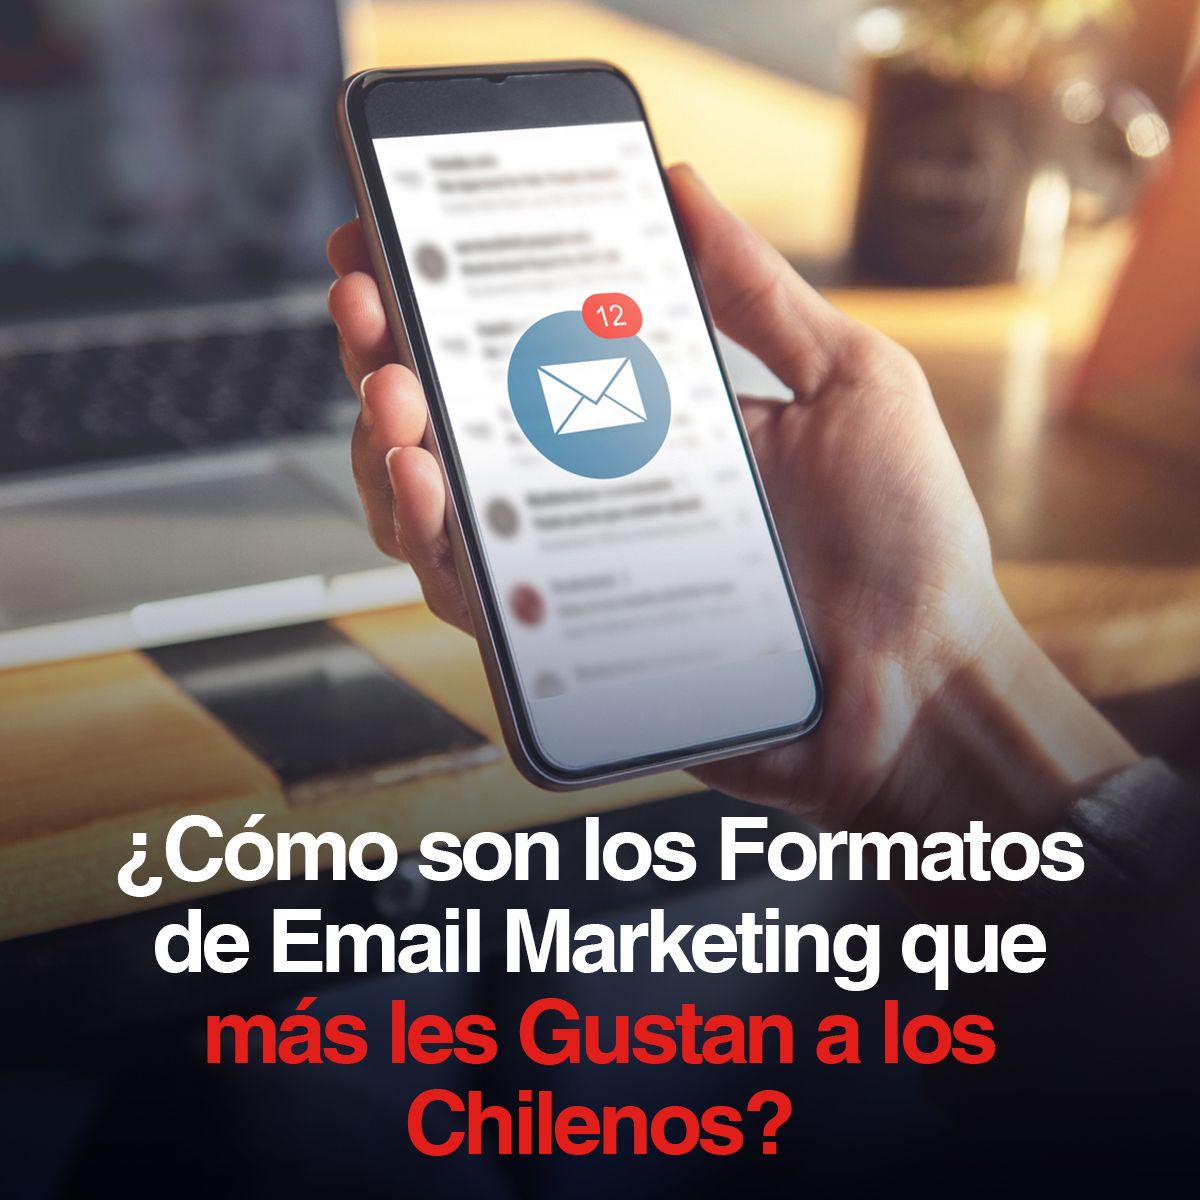 ¿Cómo son los Formatos de Email Marketing que más les Gustan a los Chilenos?